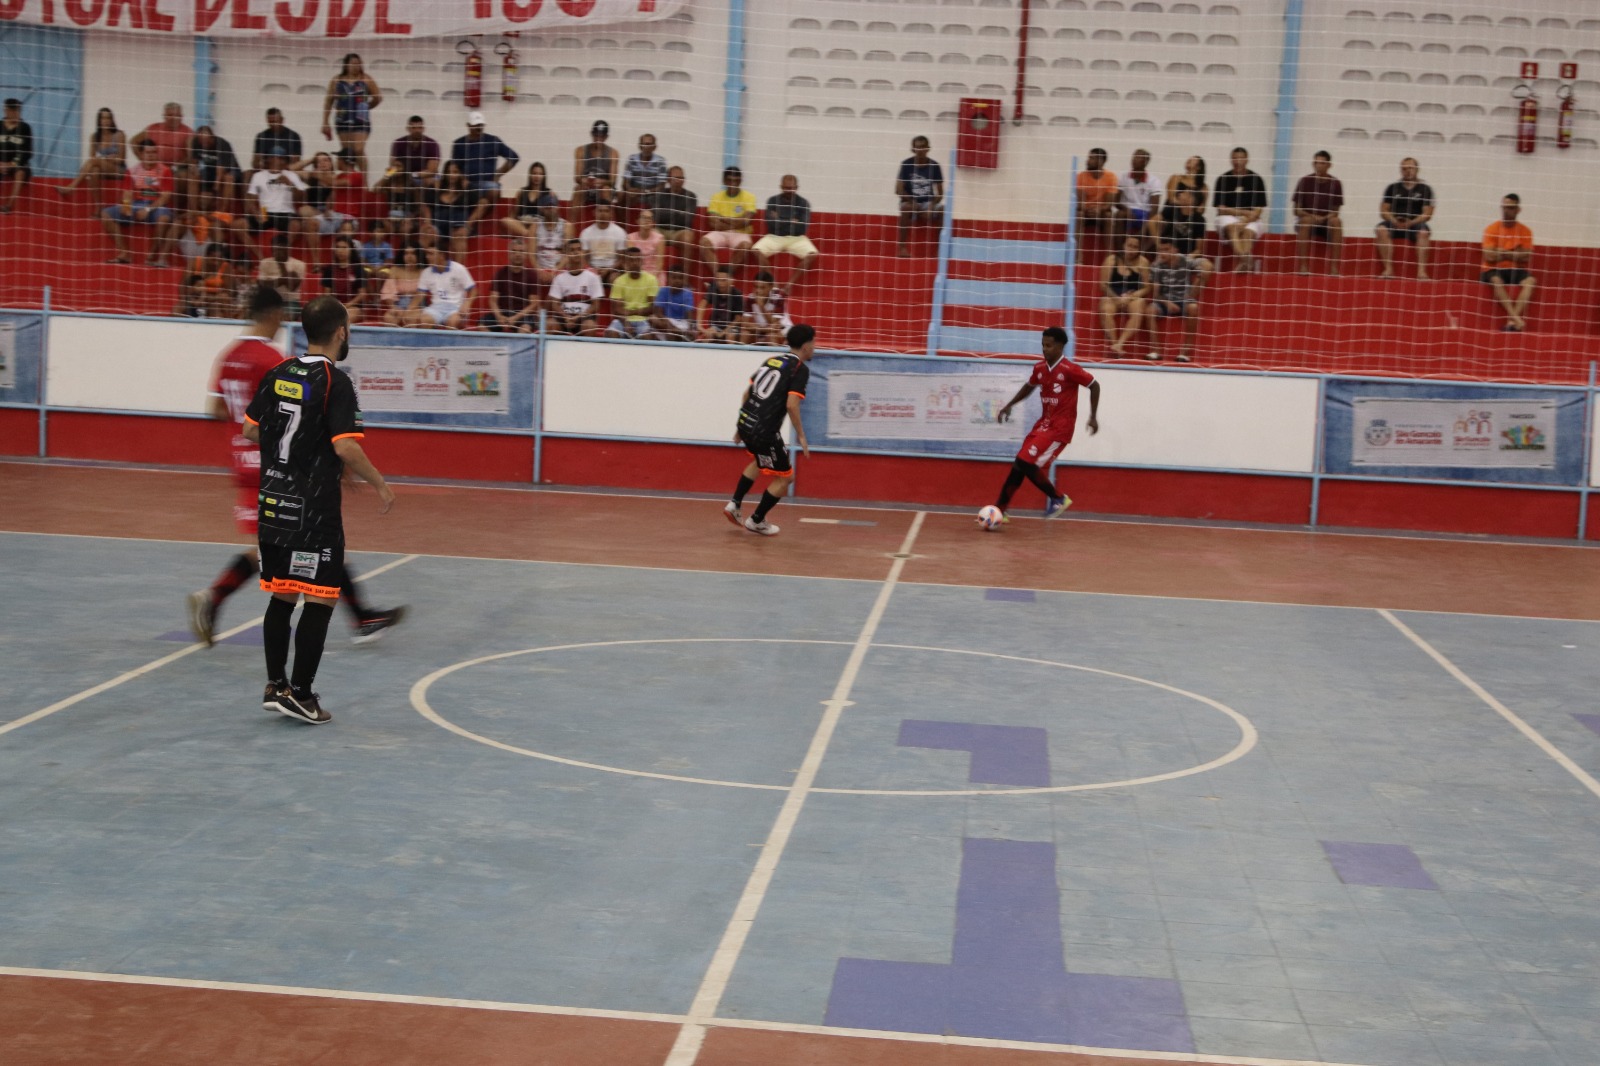 Campeonato Municipal de Futsal de São Gonçalo inicia nesta quinta-feira (27) com premiação de R$ 24 mil em dinheiro